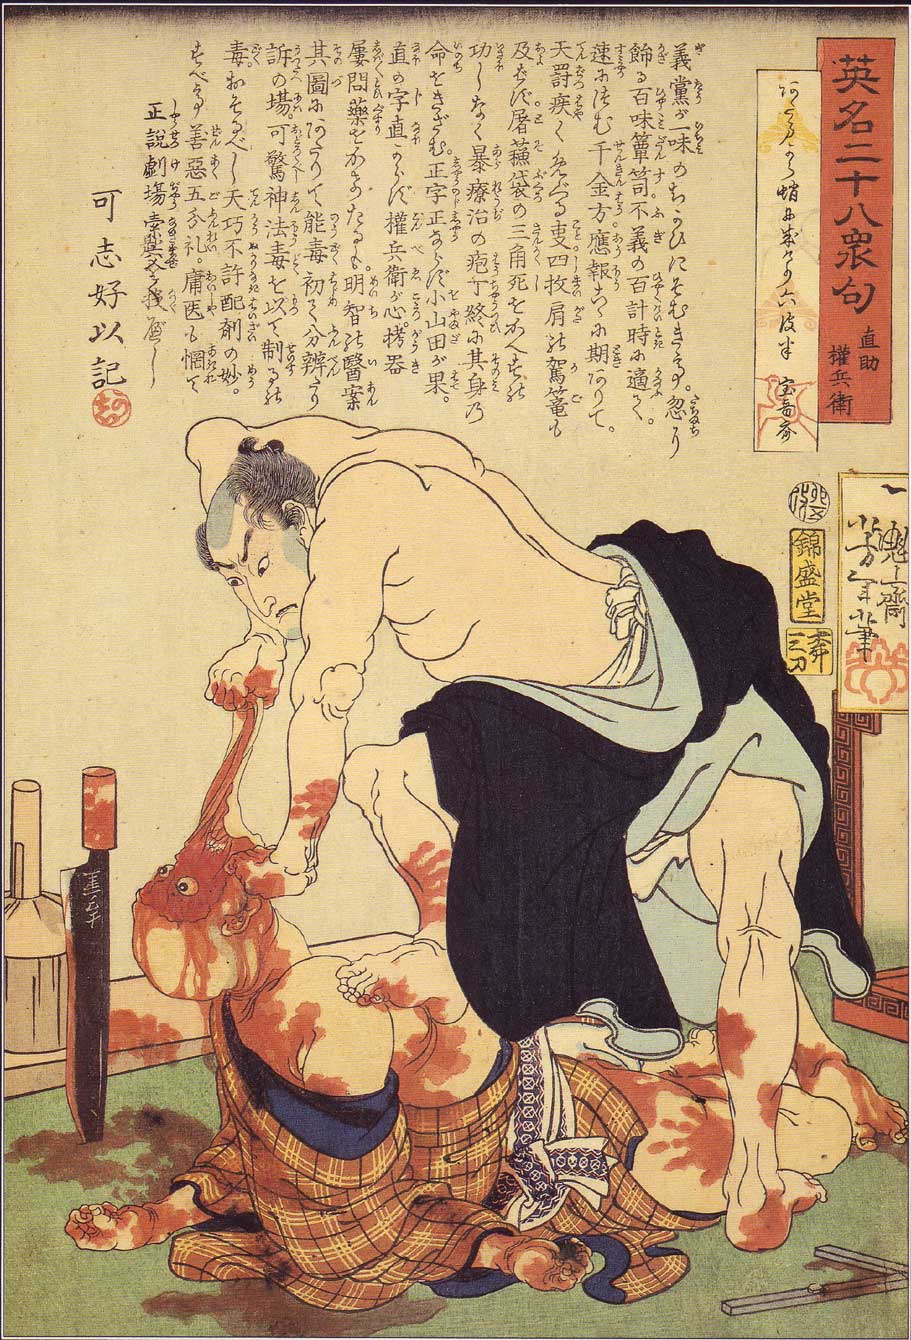 Tsukioka Yoshitoshi, Naosuke Gombei ripping off a face